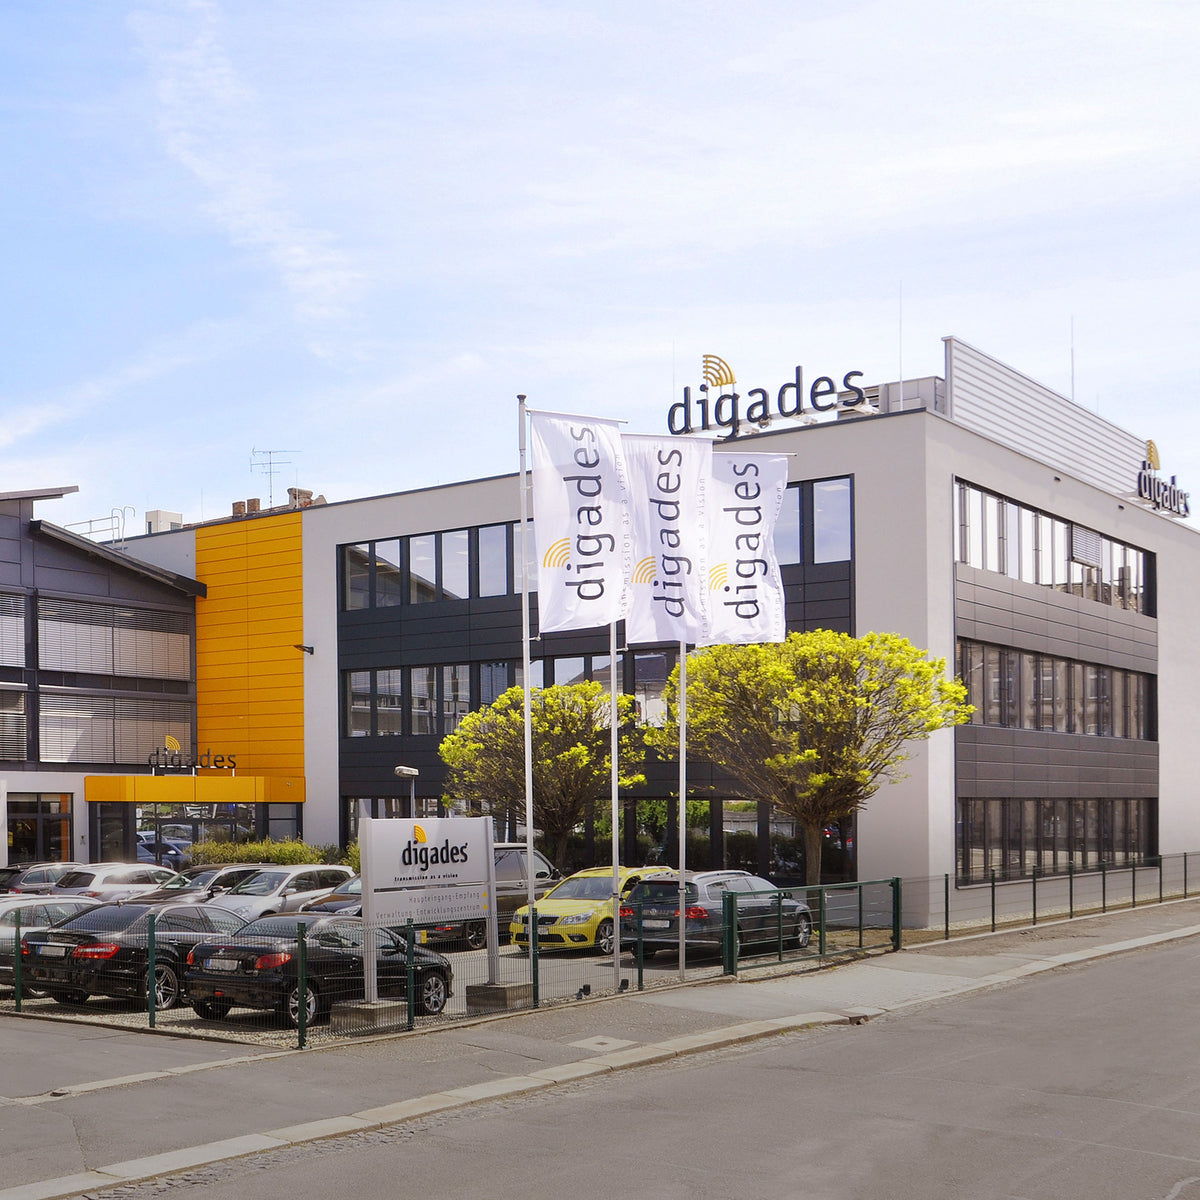 digades bekam 2019 ein neues Entwicklungszentrum in Zittau, somit wird den Arbeitnehmern beste und modernste Arbeitsbedingungen geboten. 